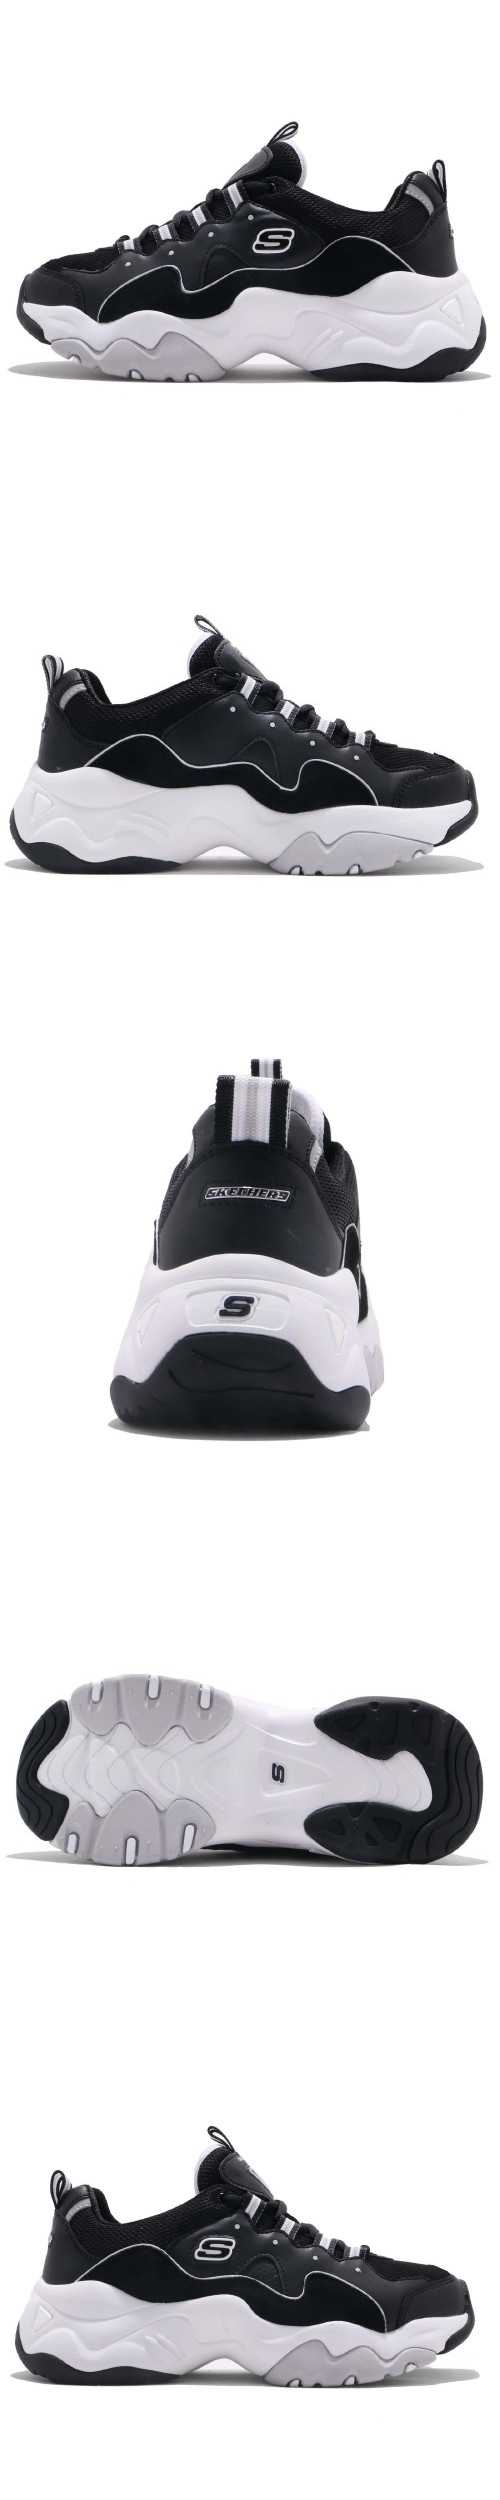 Skechers 休閒鞋 D Lites 3.0 復古 女鞋